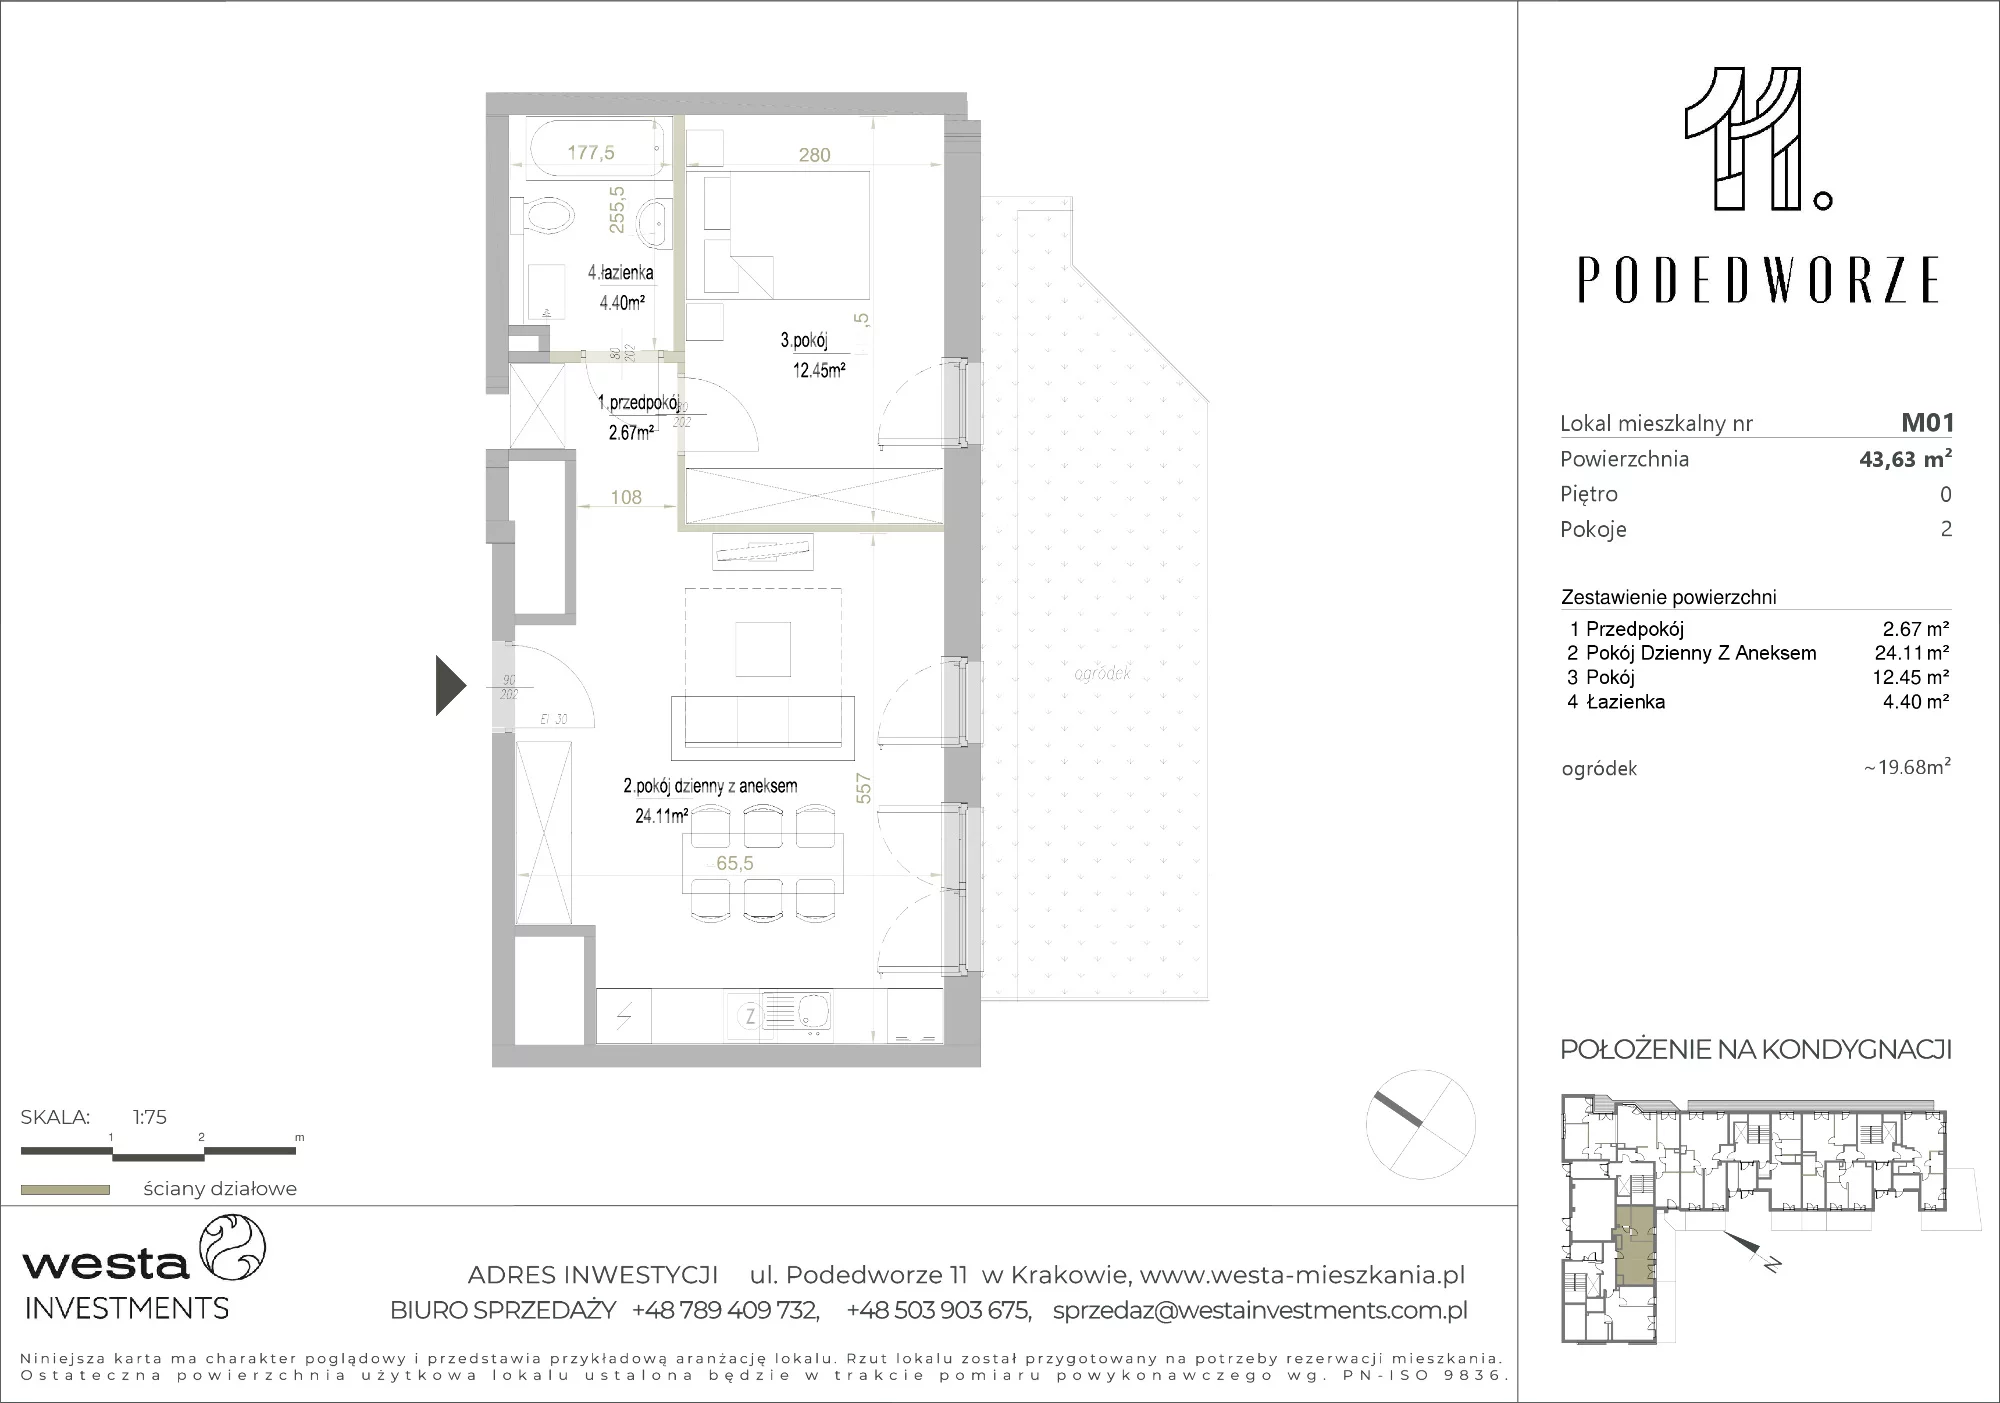 Mieszkanie 43,63 m², parter, oferta nr 1, Podedworze 11, Kraków, Podgórze Duchackie, Piaski Wielkie, ul. Podedworze 11